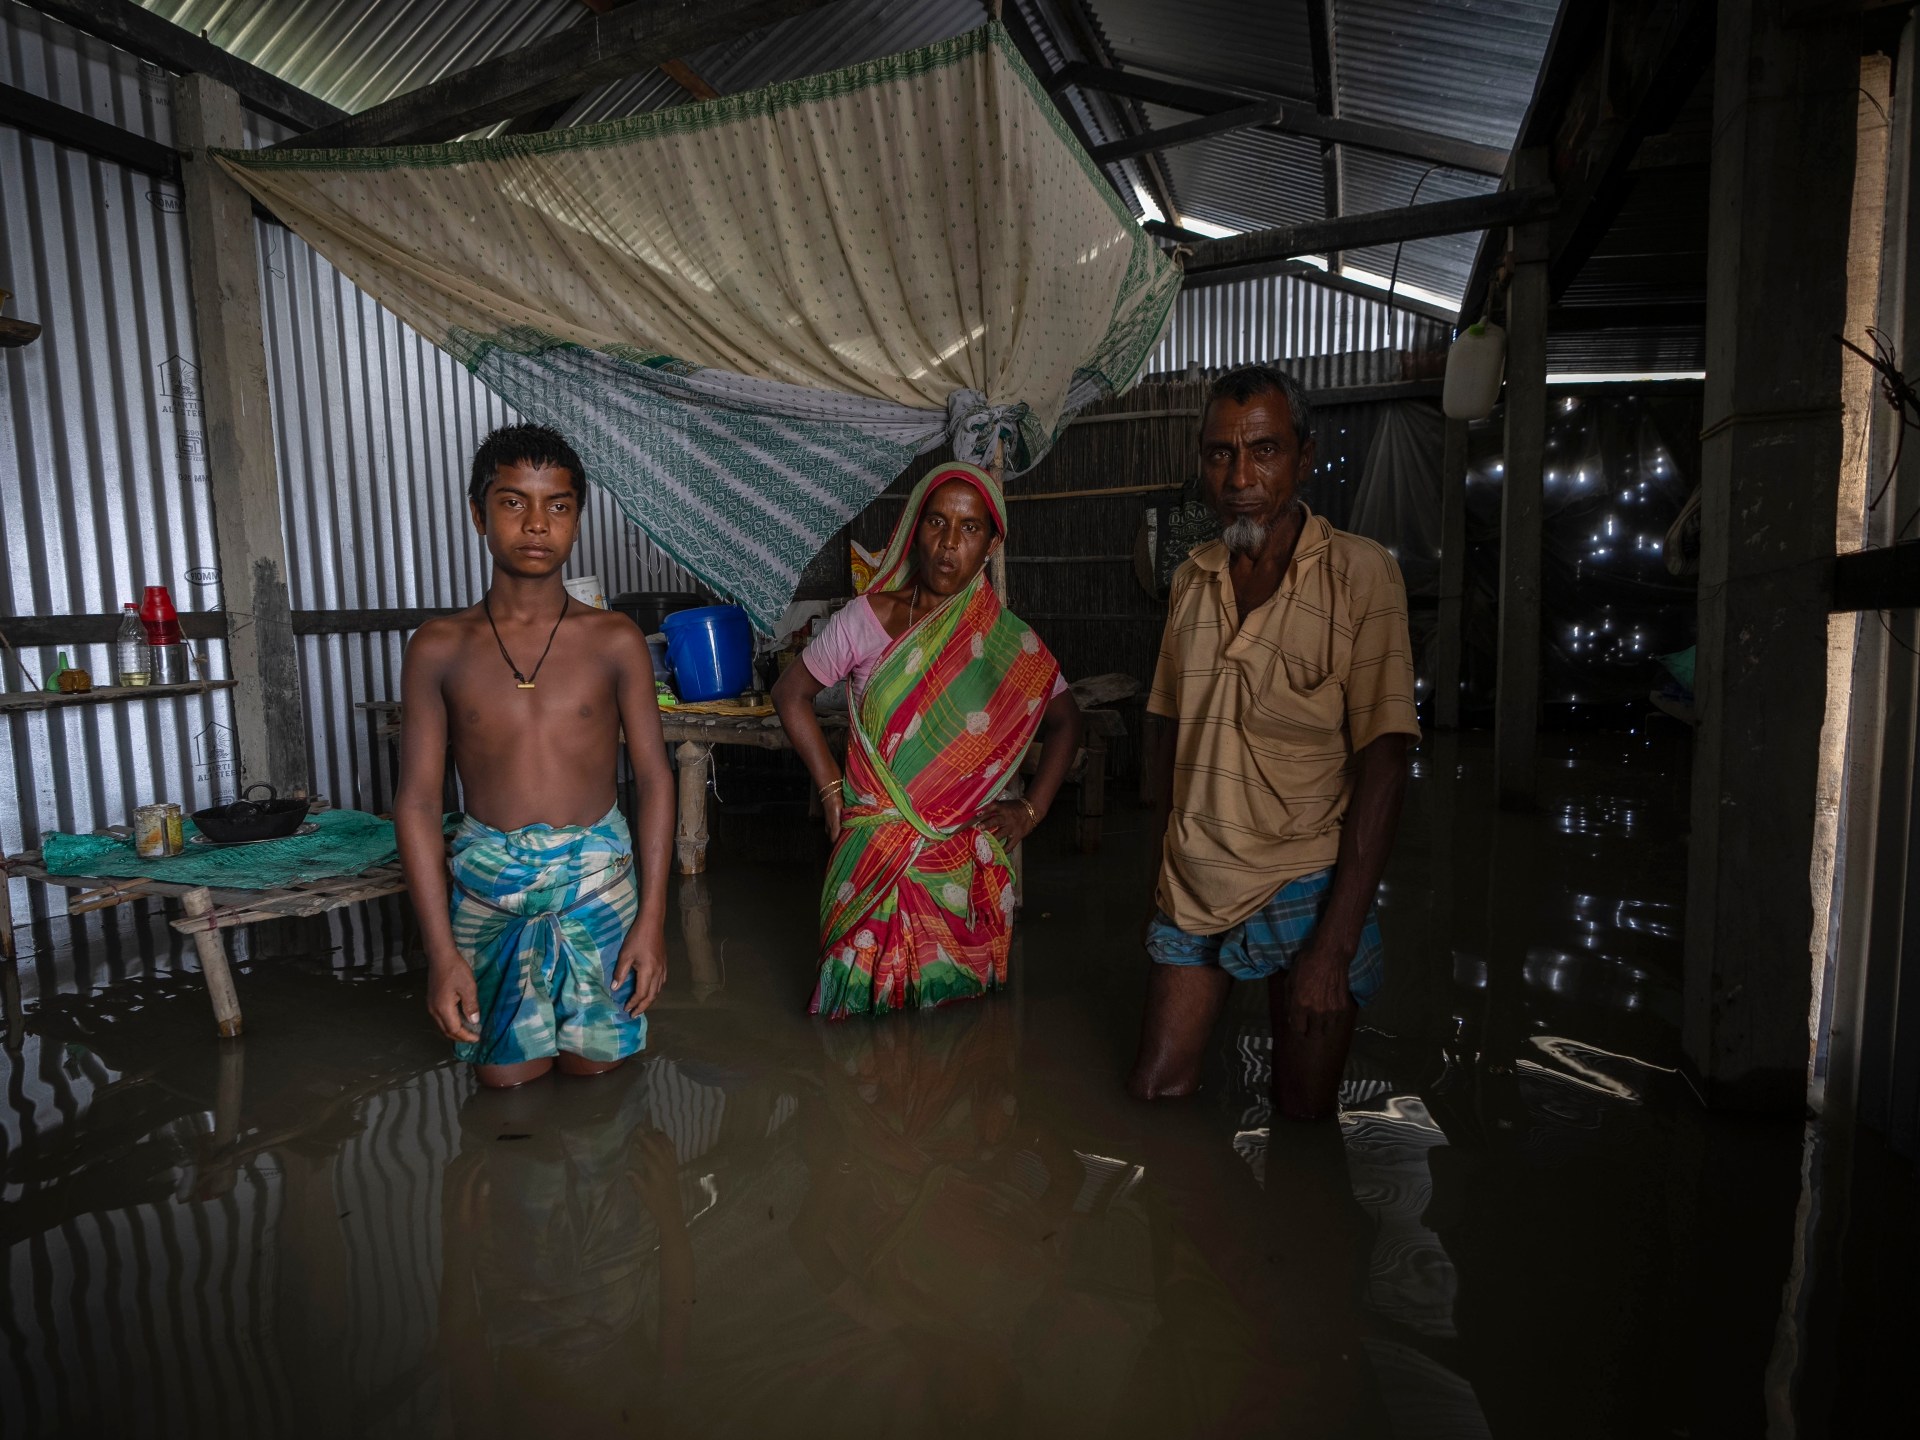 سكان الجزر النهرية في الهند يعودون إلى ديارهم بين الفيضانات |  أخبار أزمة المناخ